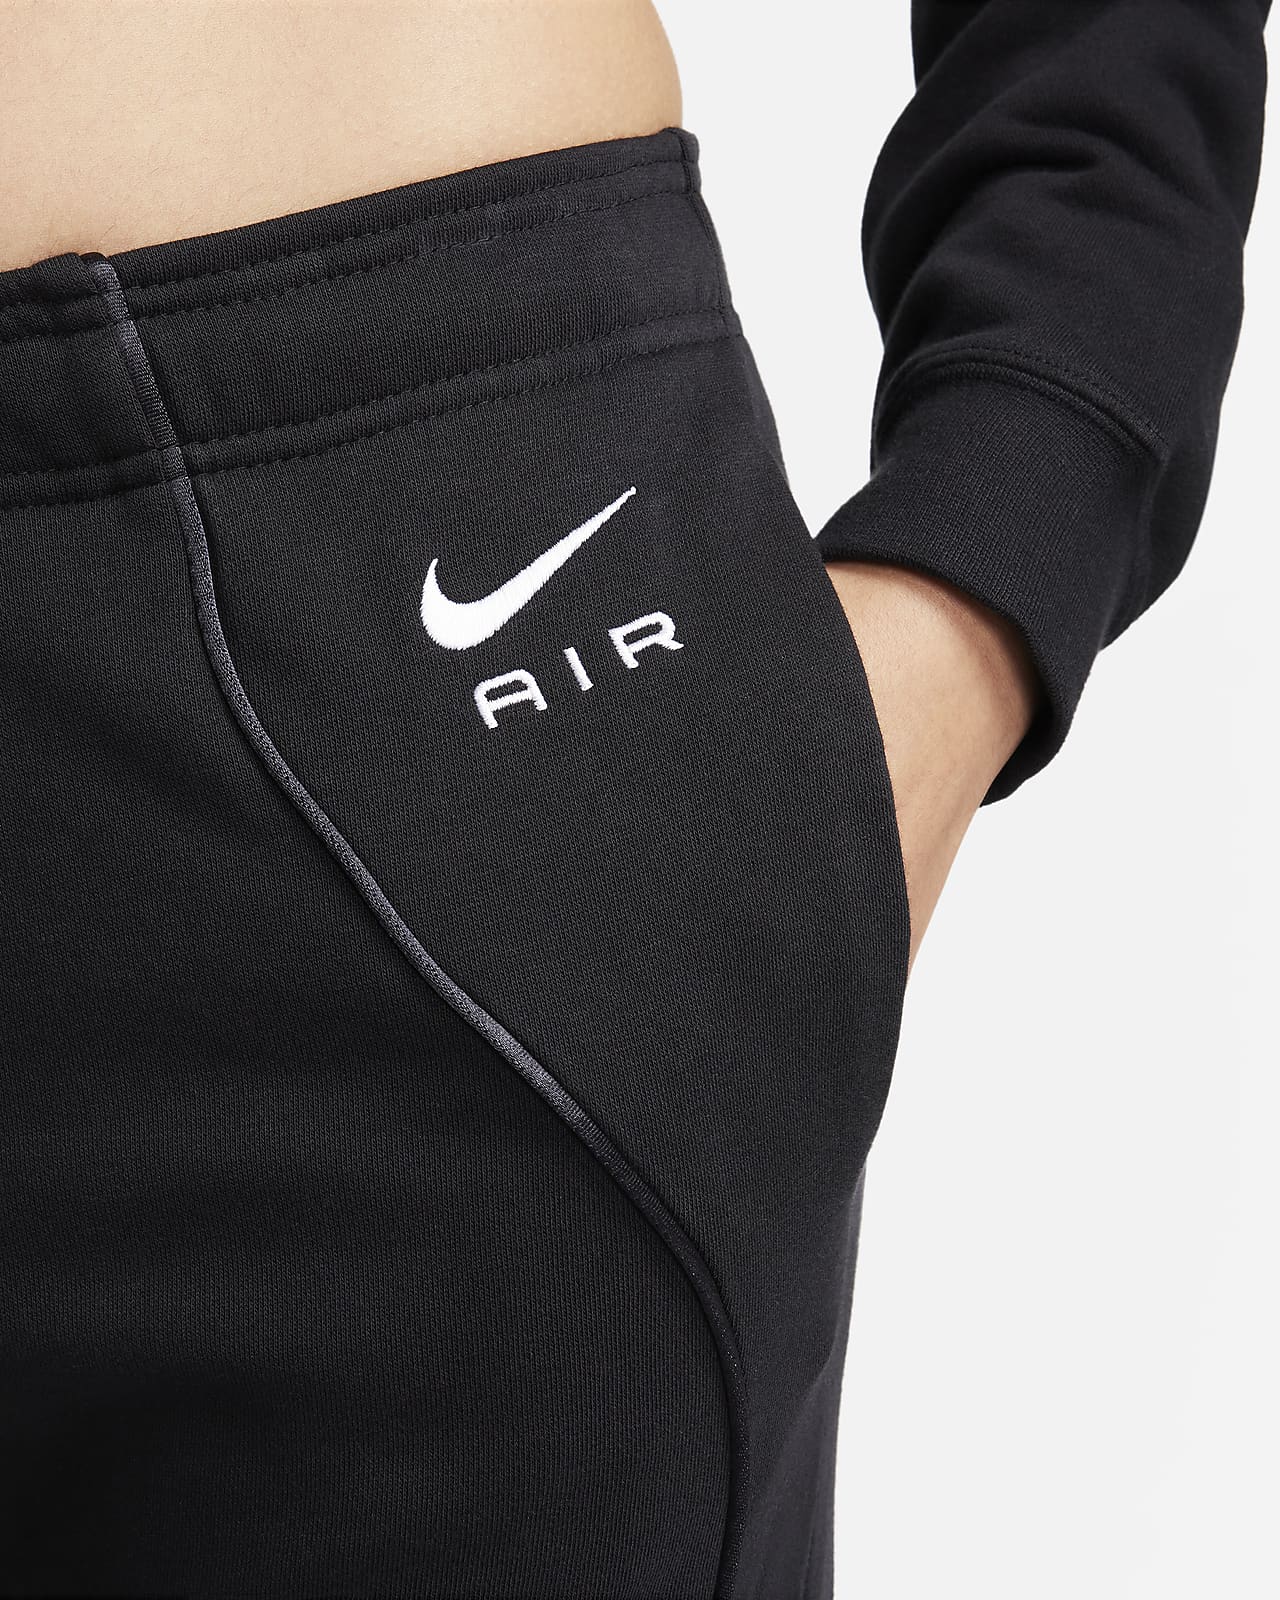 Women's Nike Sportswear Fleece Pants